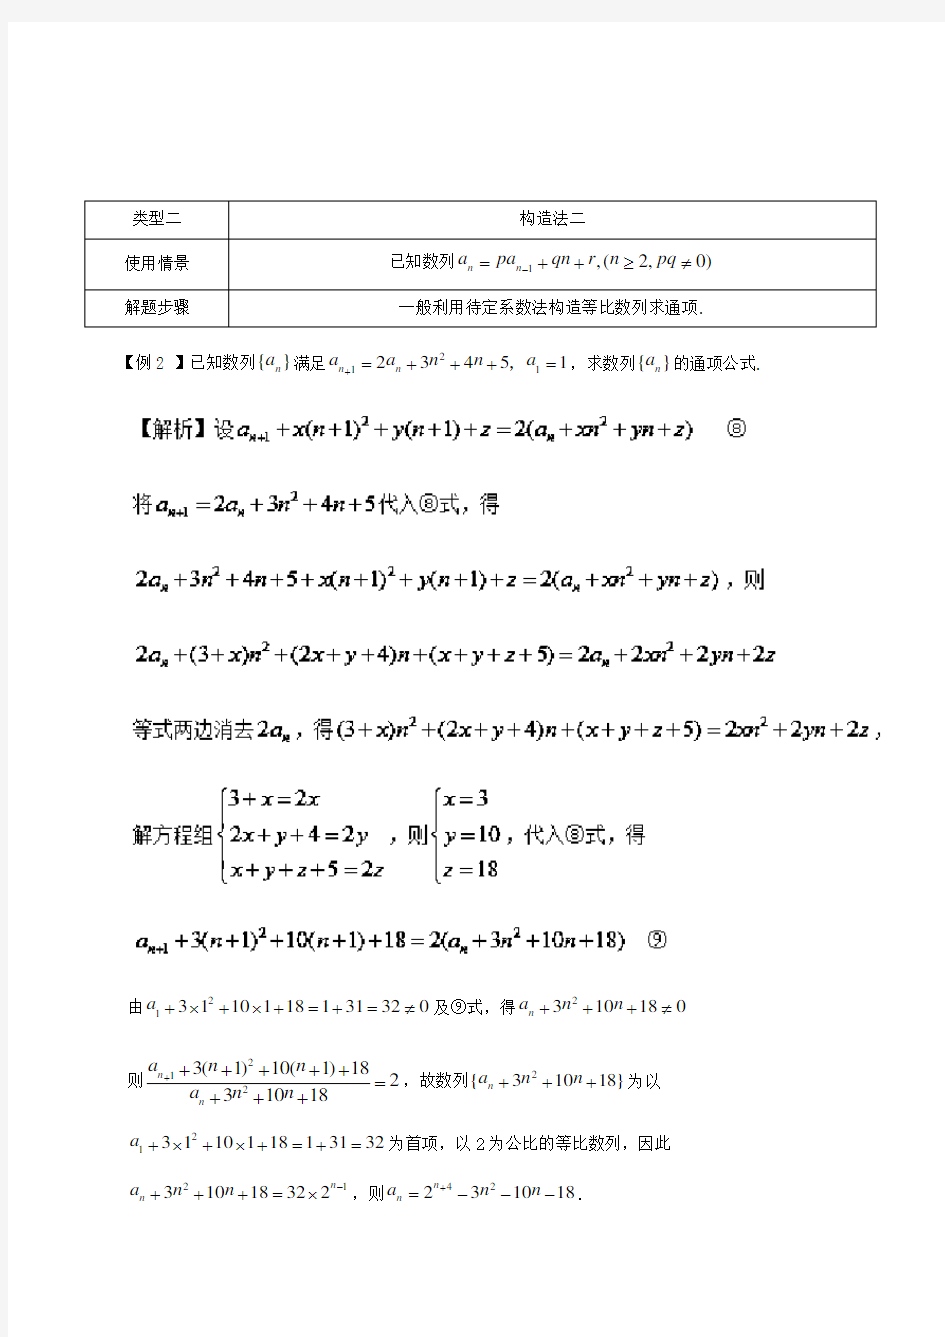 高中数学常见题型解法归纳 数列通项的求法二(构造法)